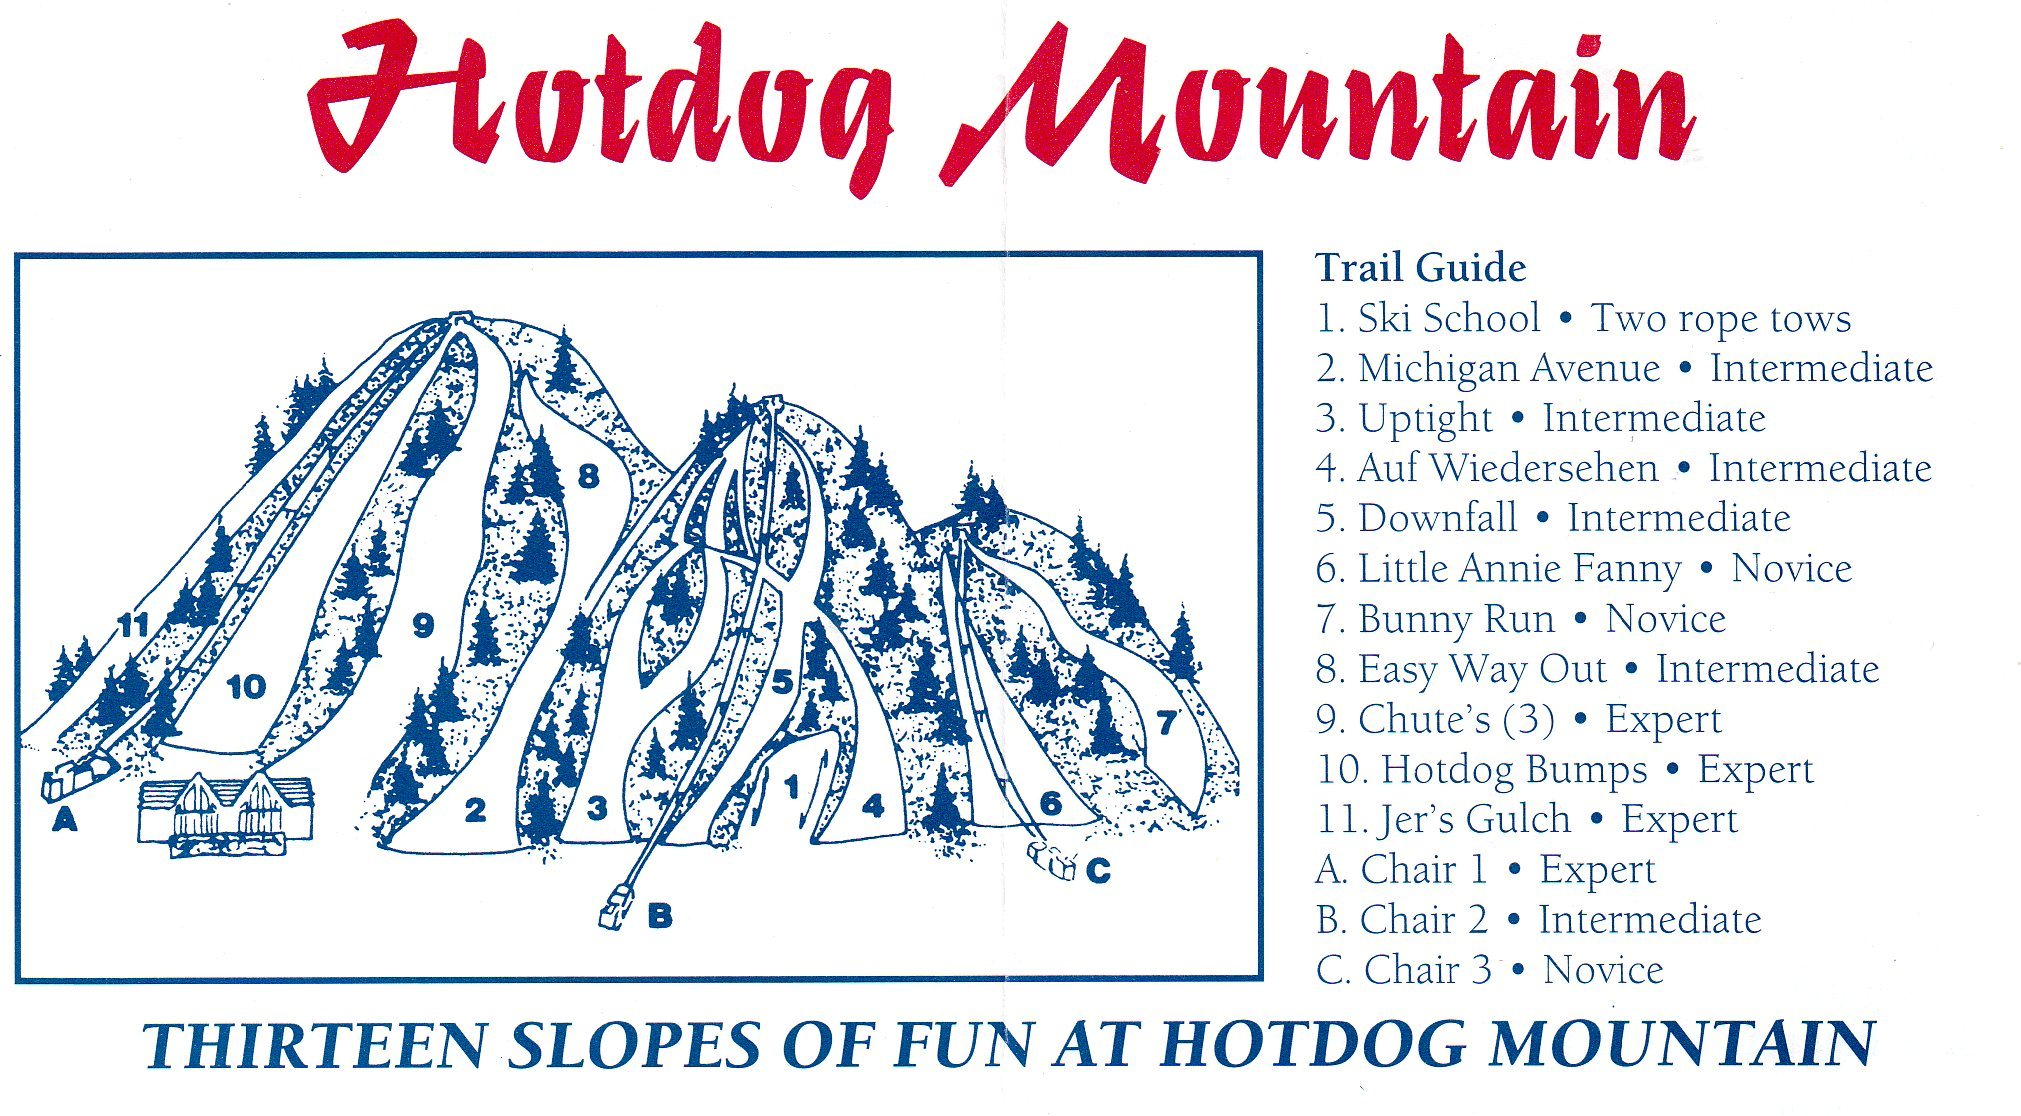 Hotdog Mountain